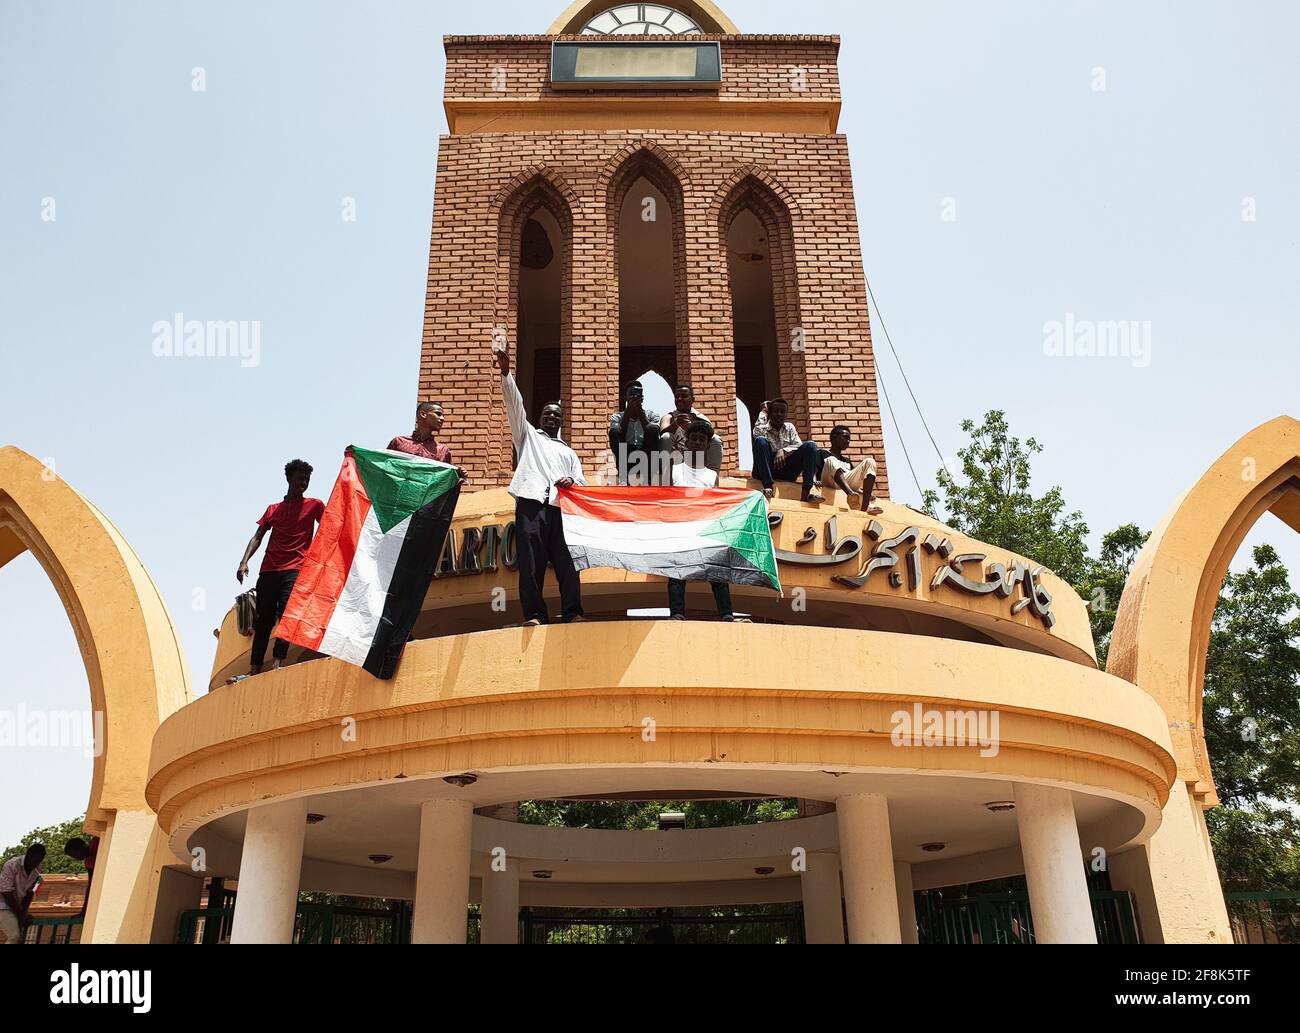 KHARTOUM, SUDAN - 11 aprile 2019: Il popolo sudanese esce per le strade per celebrare la caduta del regime di al-Bashir il 11 aprile presso la sede di t Foto Stock